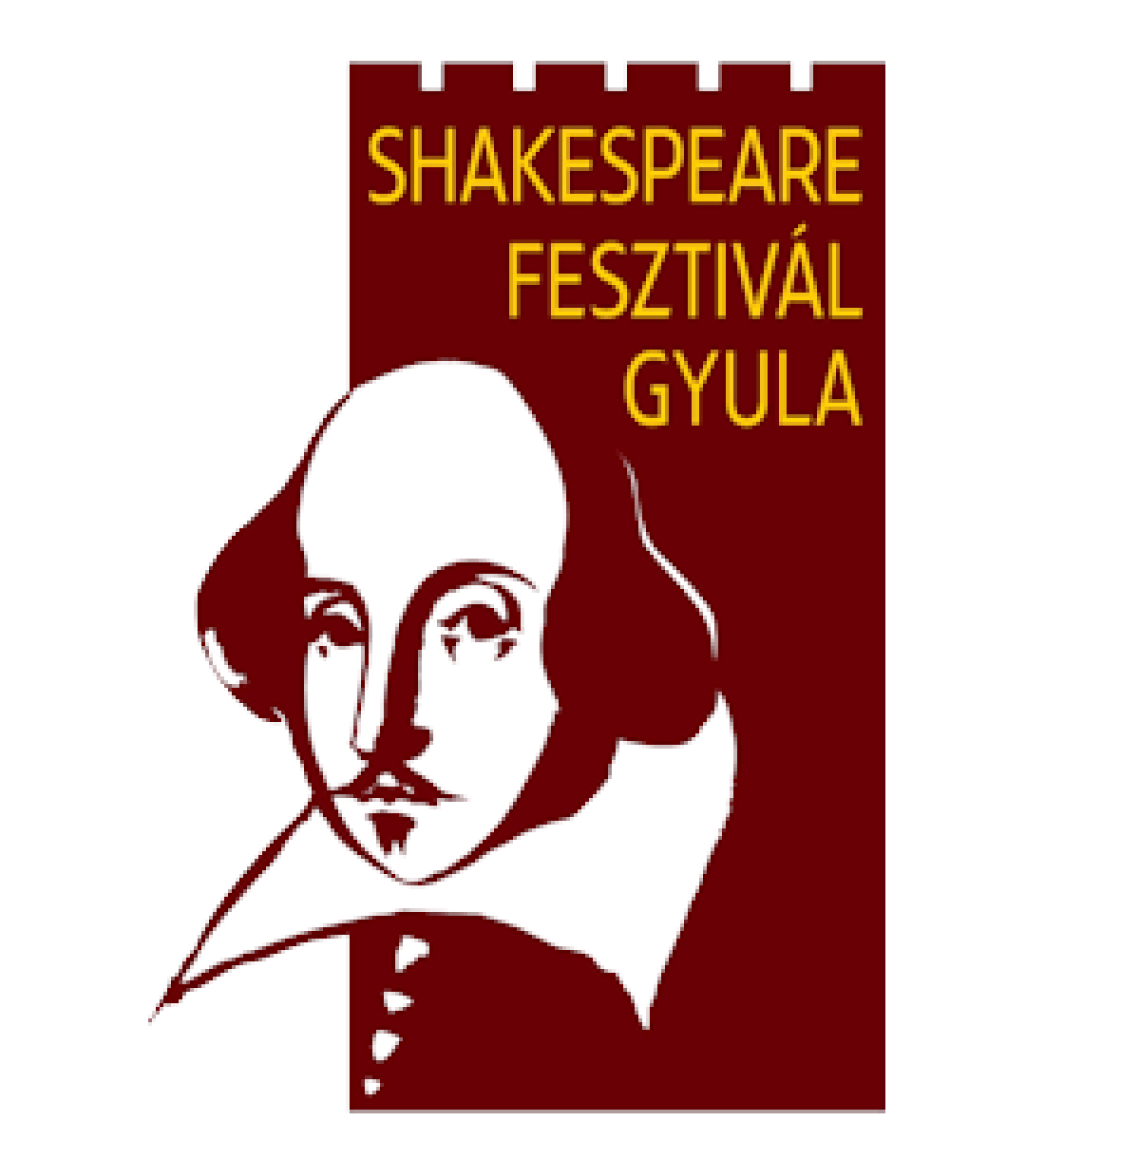 gyulaivarszinhaz-shakespeare-fesztival-logo-01.png